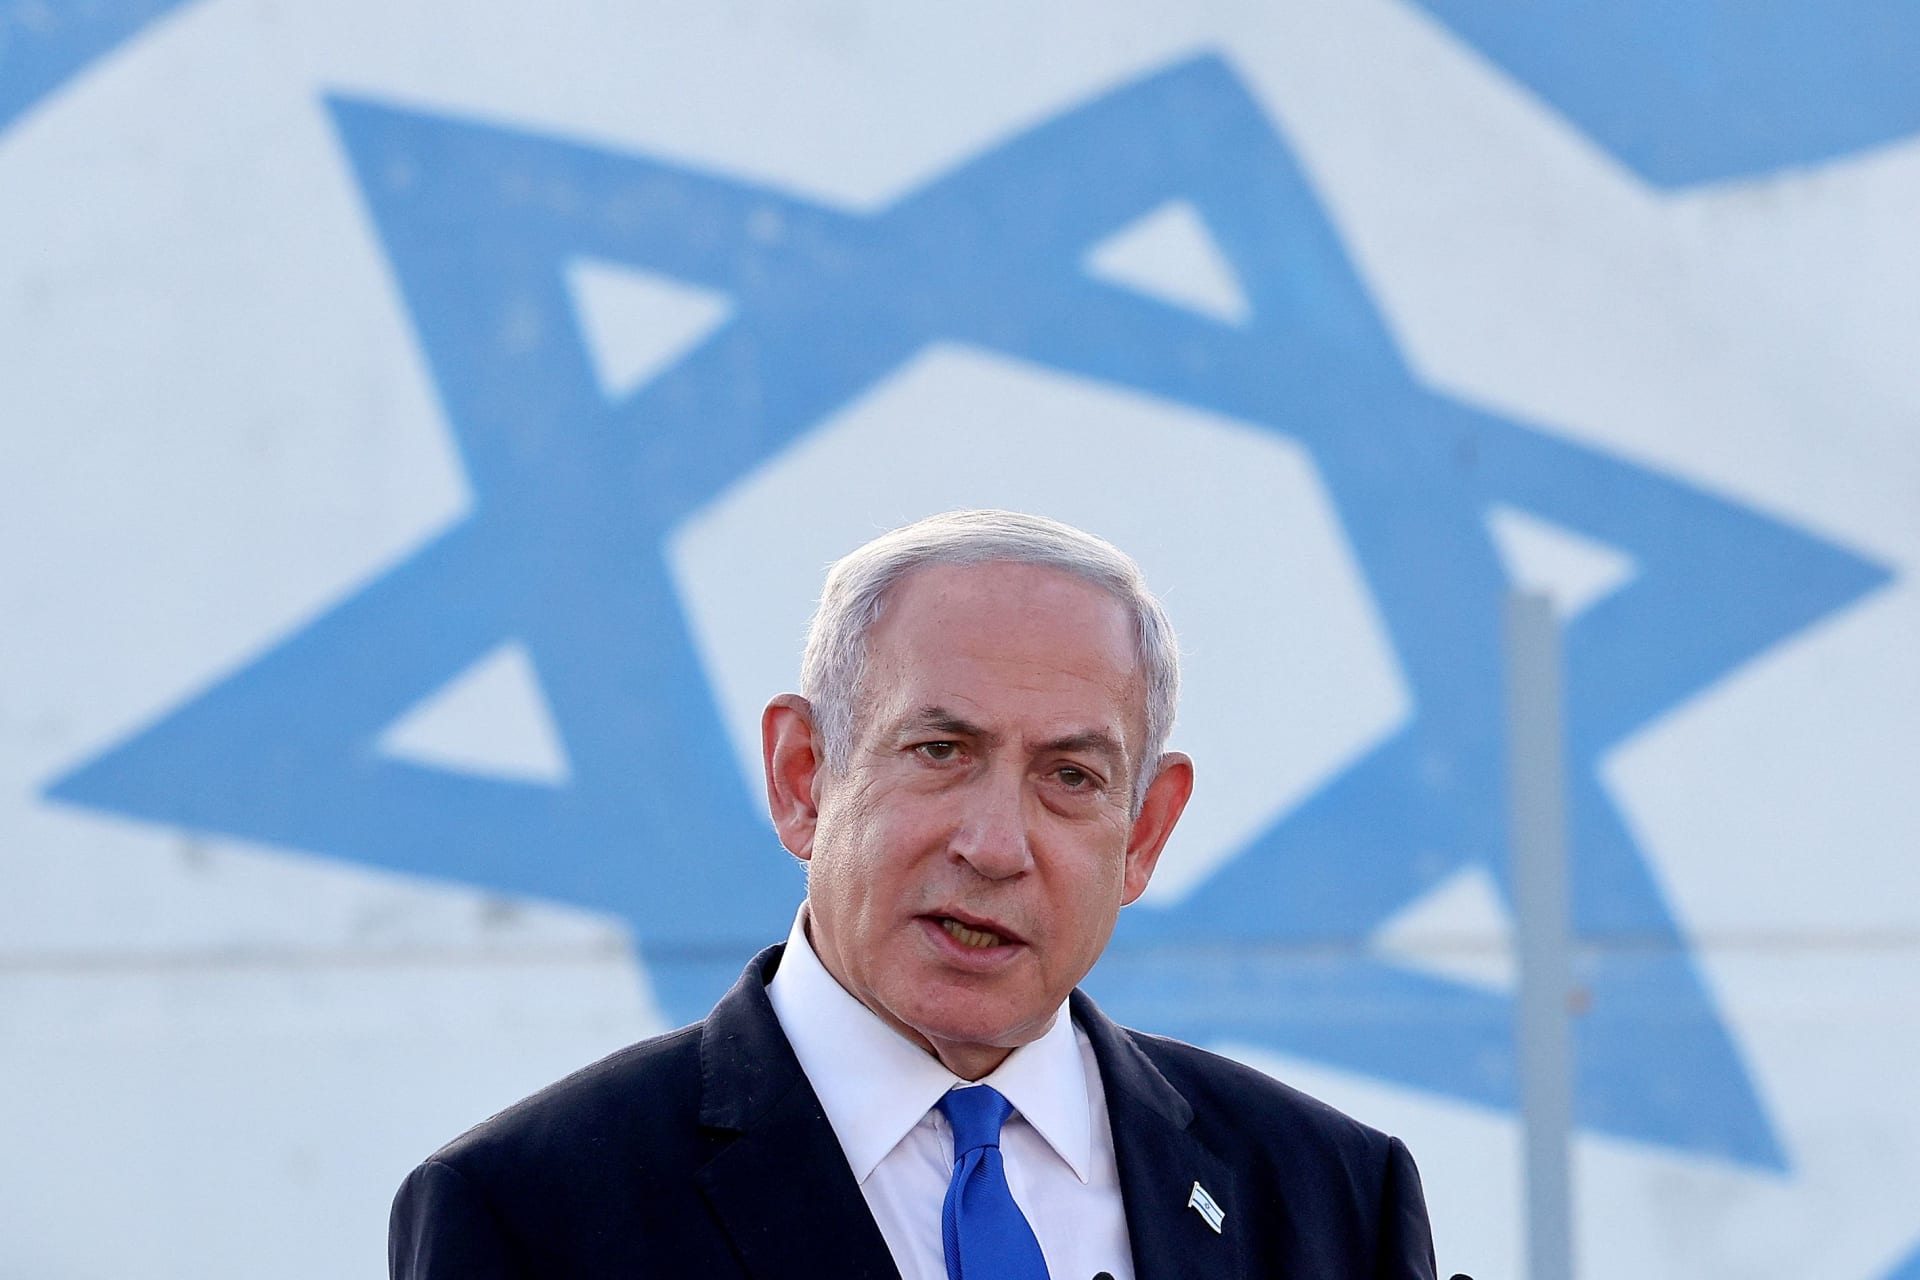 وسط الضغوط.. نتنياهو يرفض شروط "حماس" للتوصل إلى اتفاق لإطلاق سراح الرهائن وإنهاء الحرب 